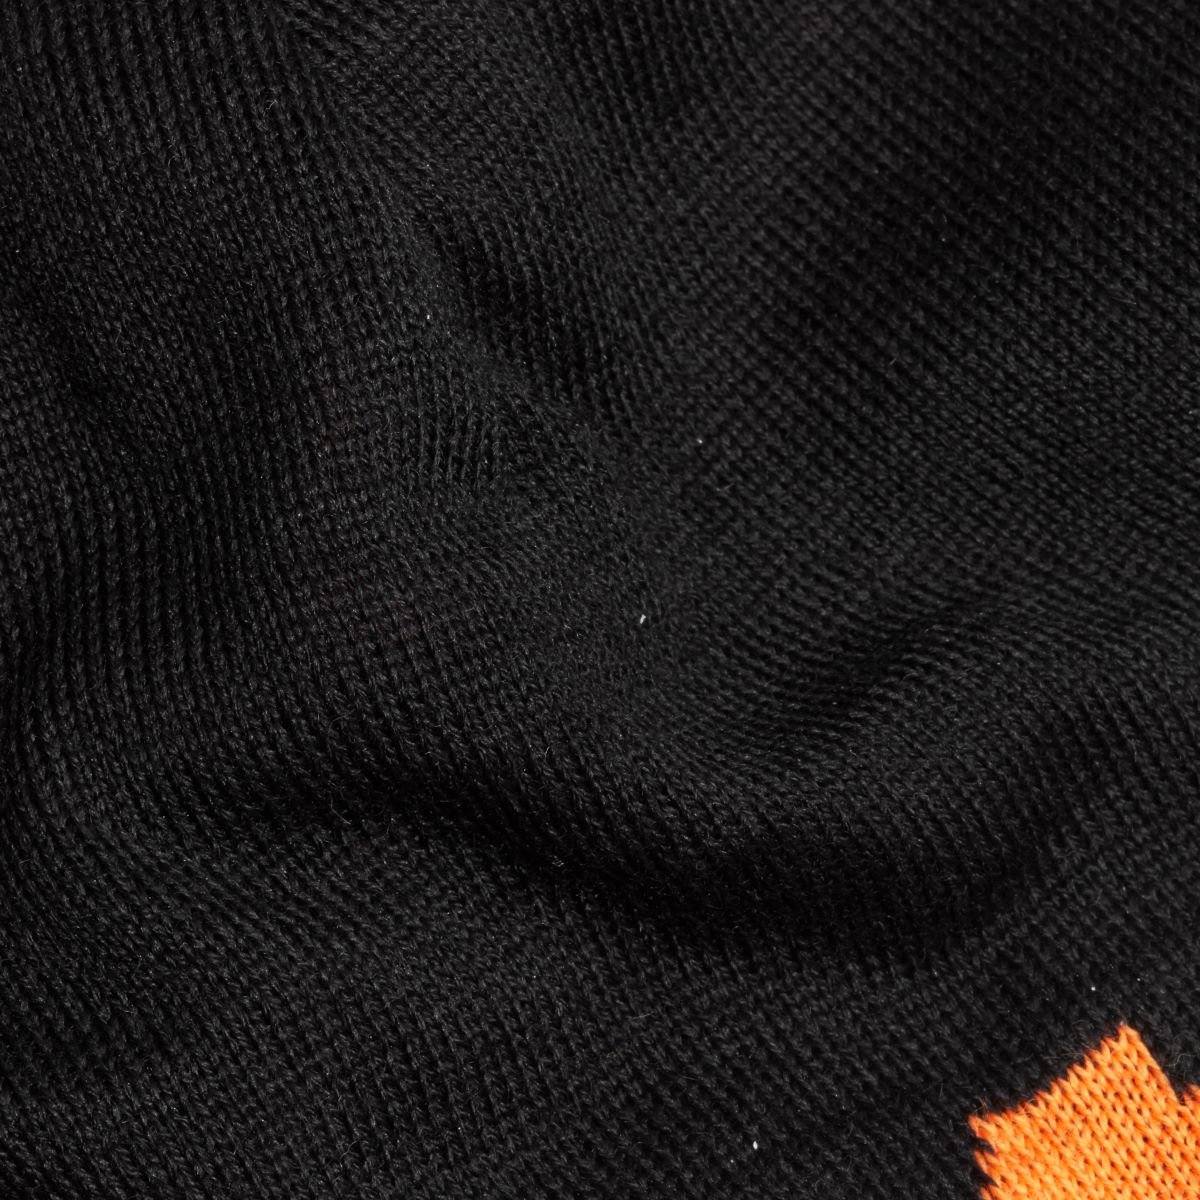 Čepice Mammut Logo Beanie - černá/oranžová